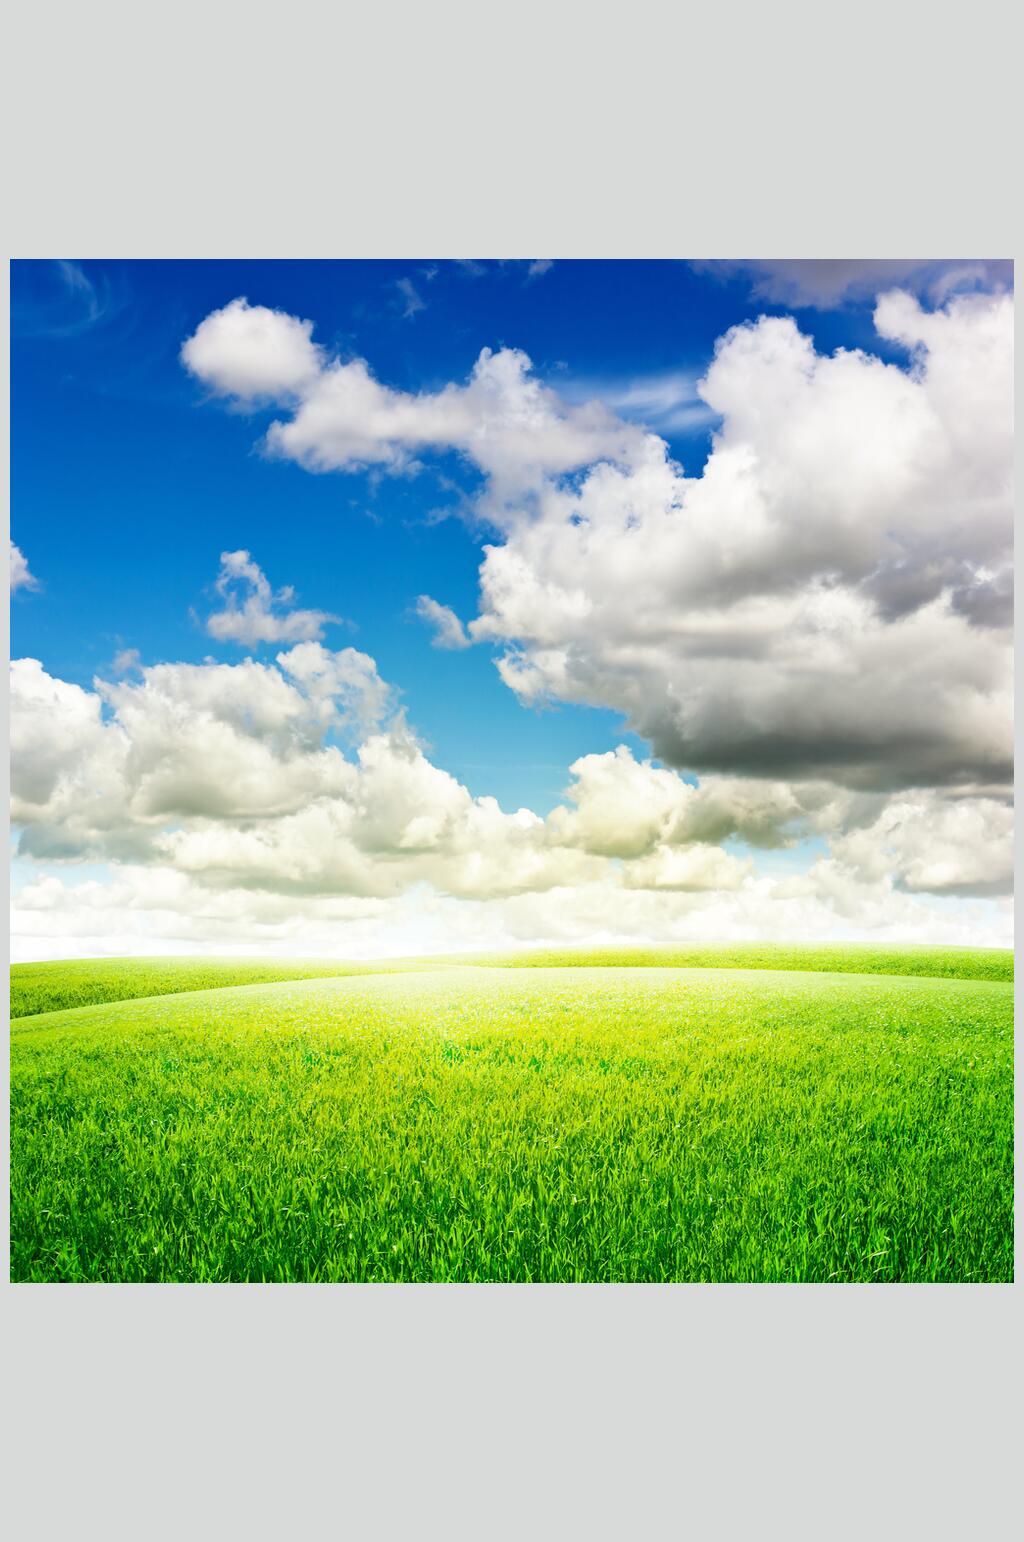 草地天空风景图片蓝天白云草地摄影图